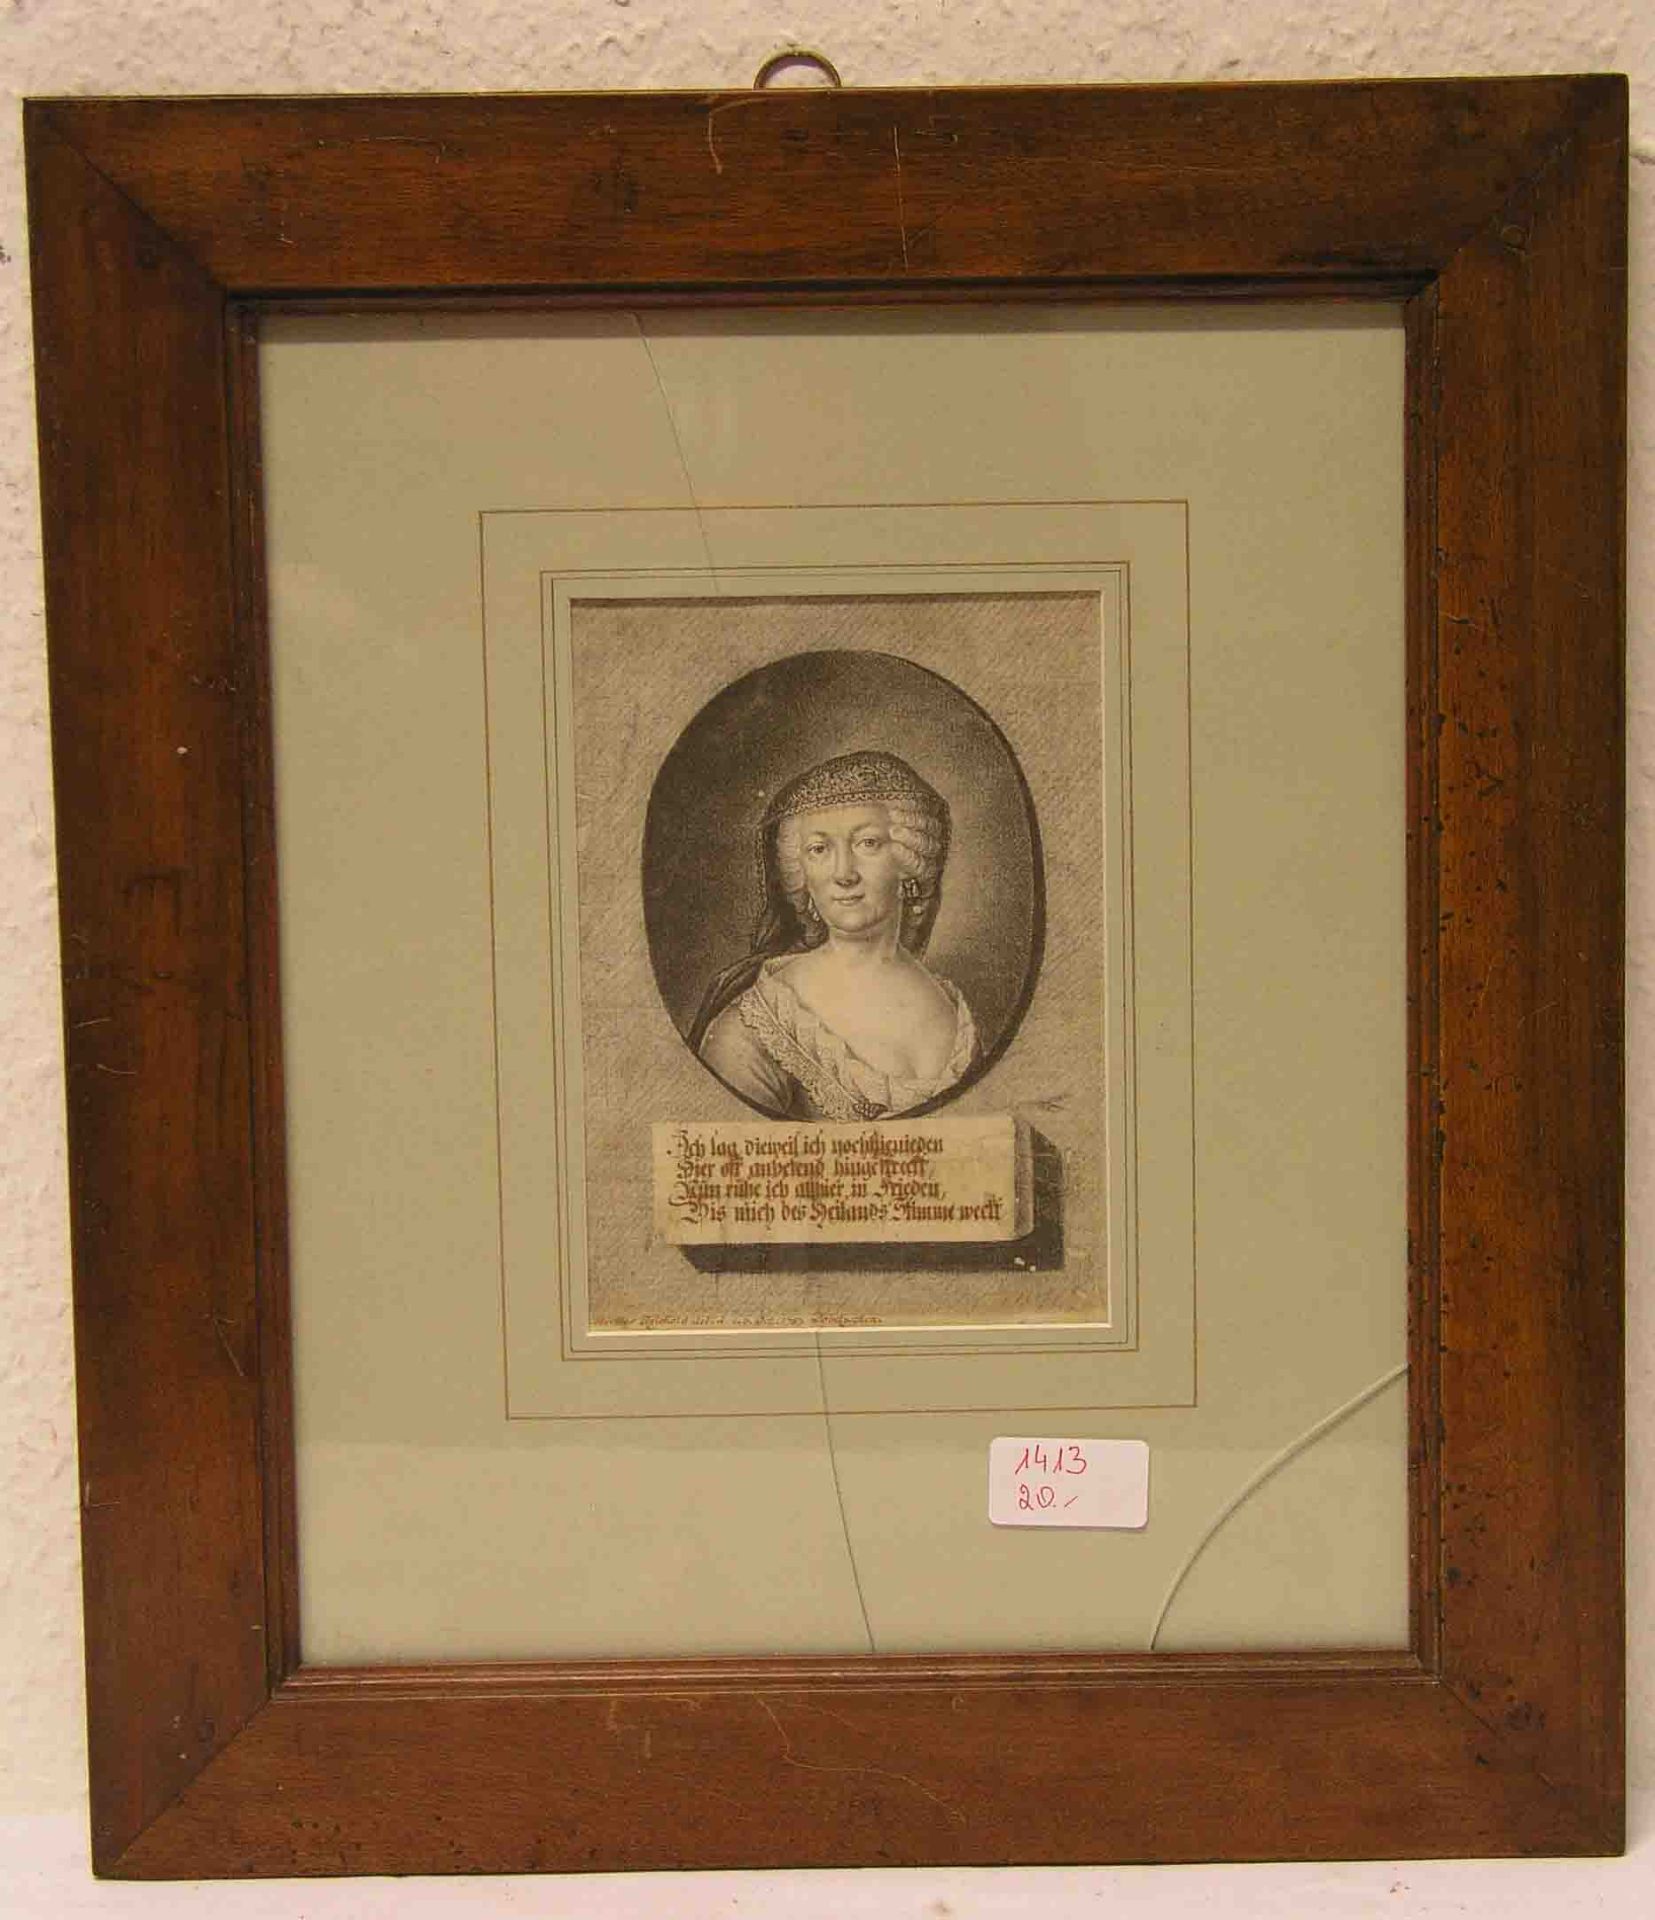 Hermes Reichold: "Brustbild einer trauernden Dame". Kohlezeichnung, signiert, 1787,Dobitzschen, 17 x